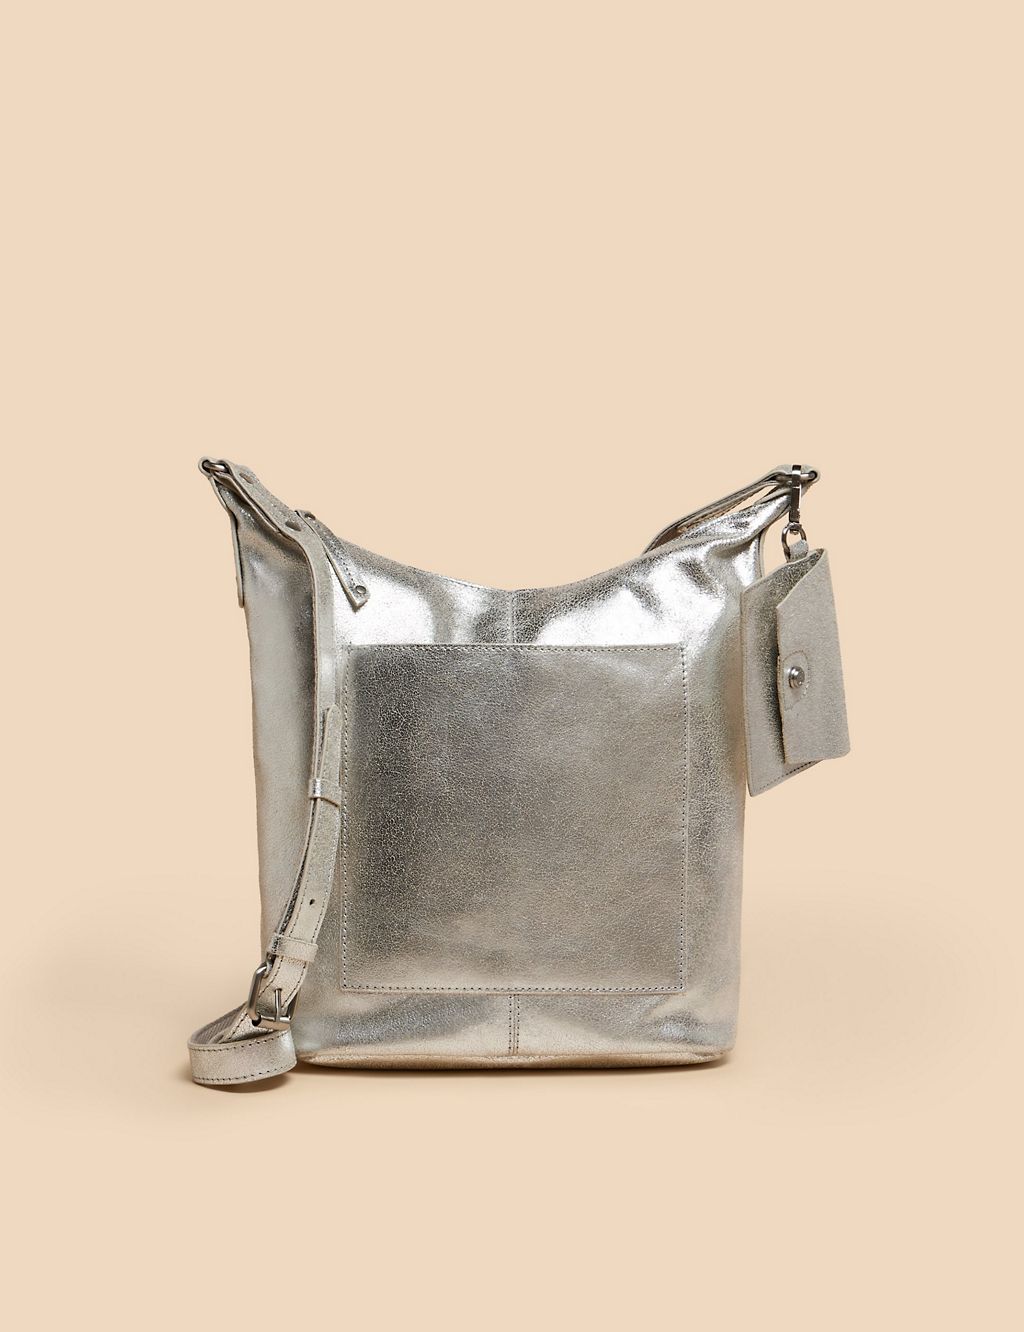 Leather Metallic Cross Body Bag 3 of 4